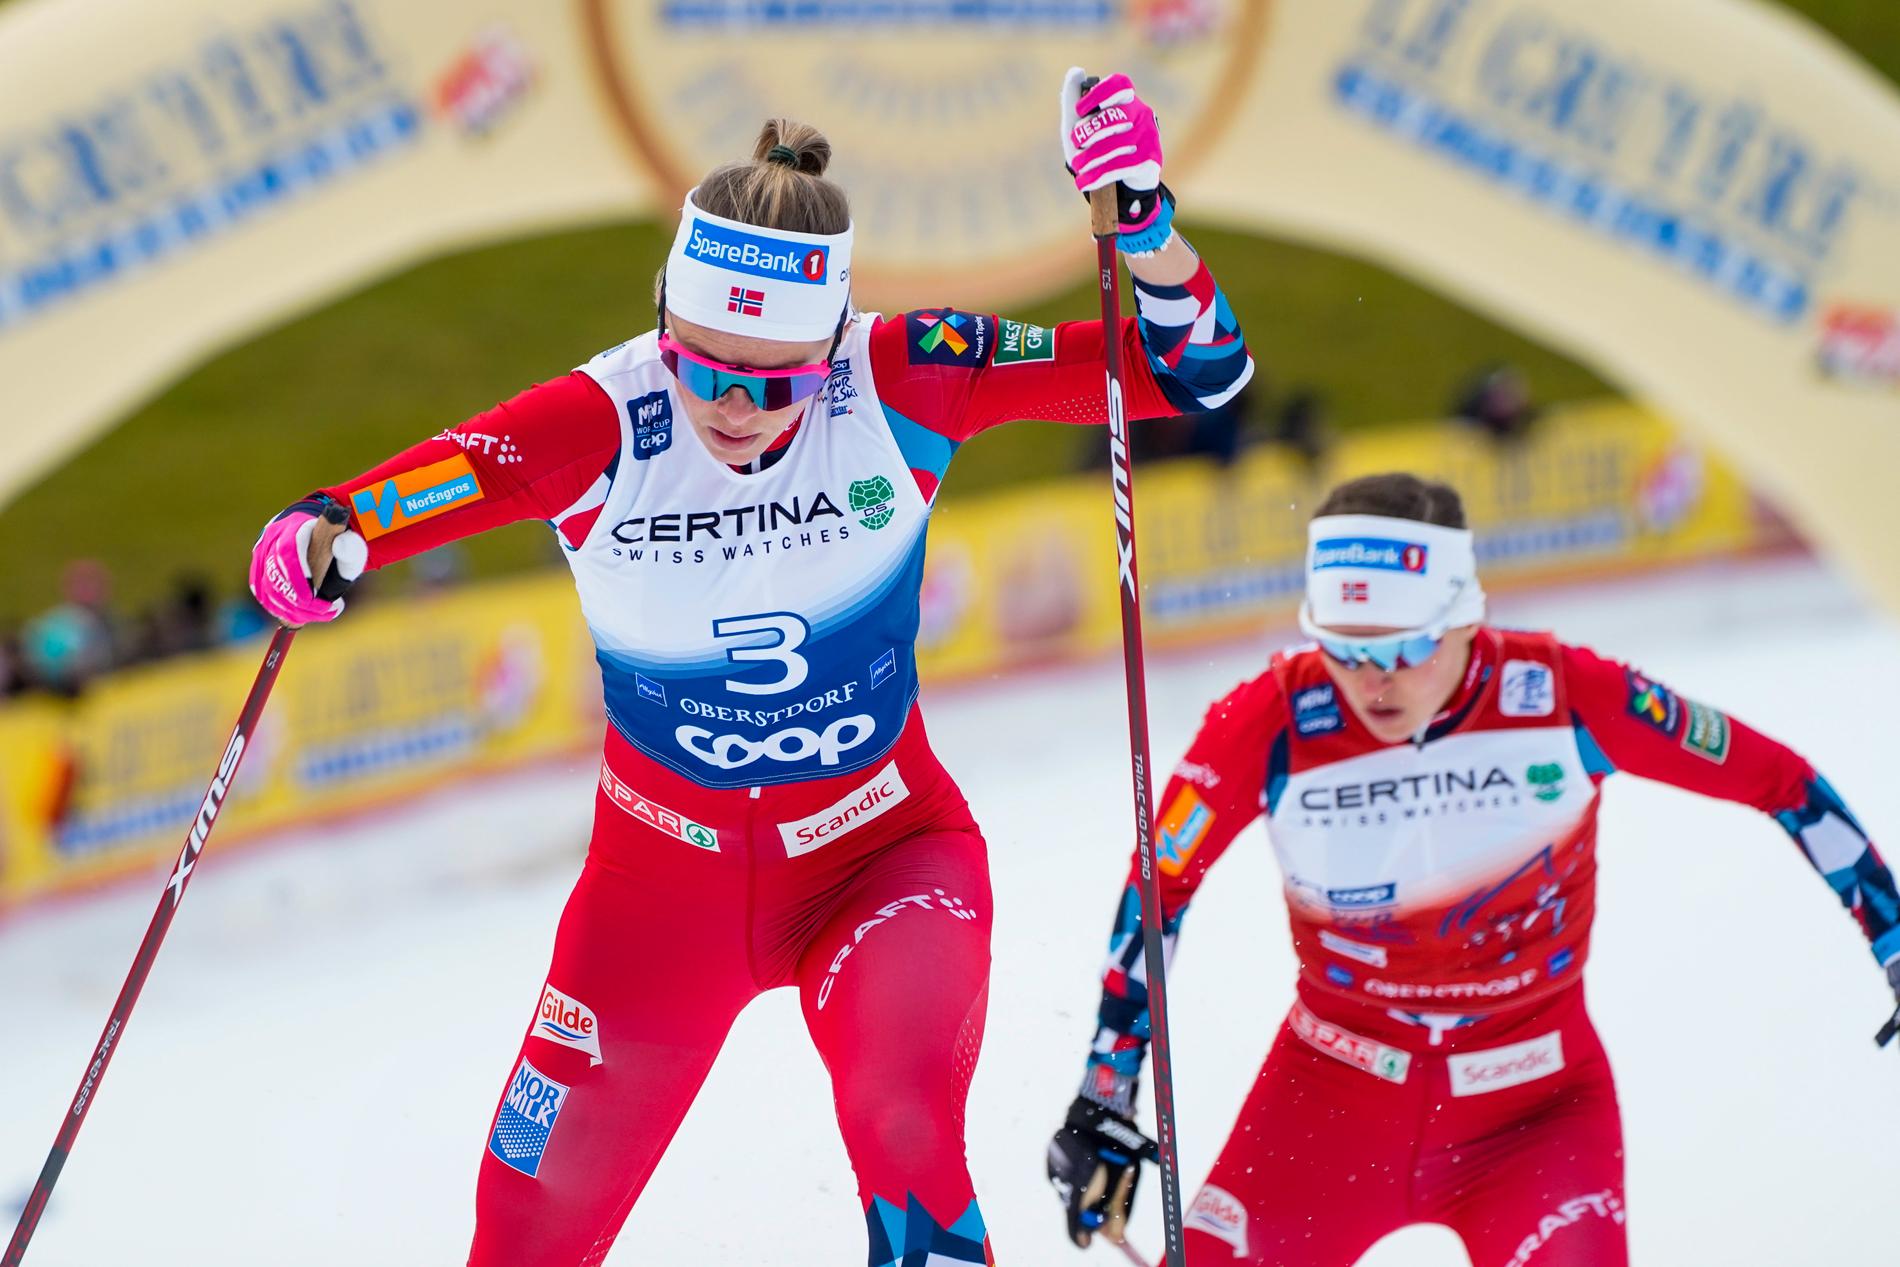 Anne Kjersti Kalvå breaks the Tour de Ski after testing positive for Corona